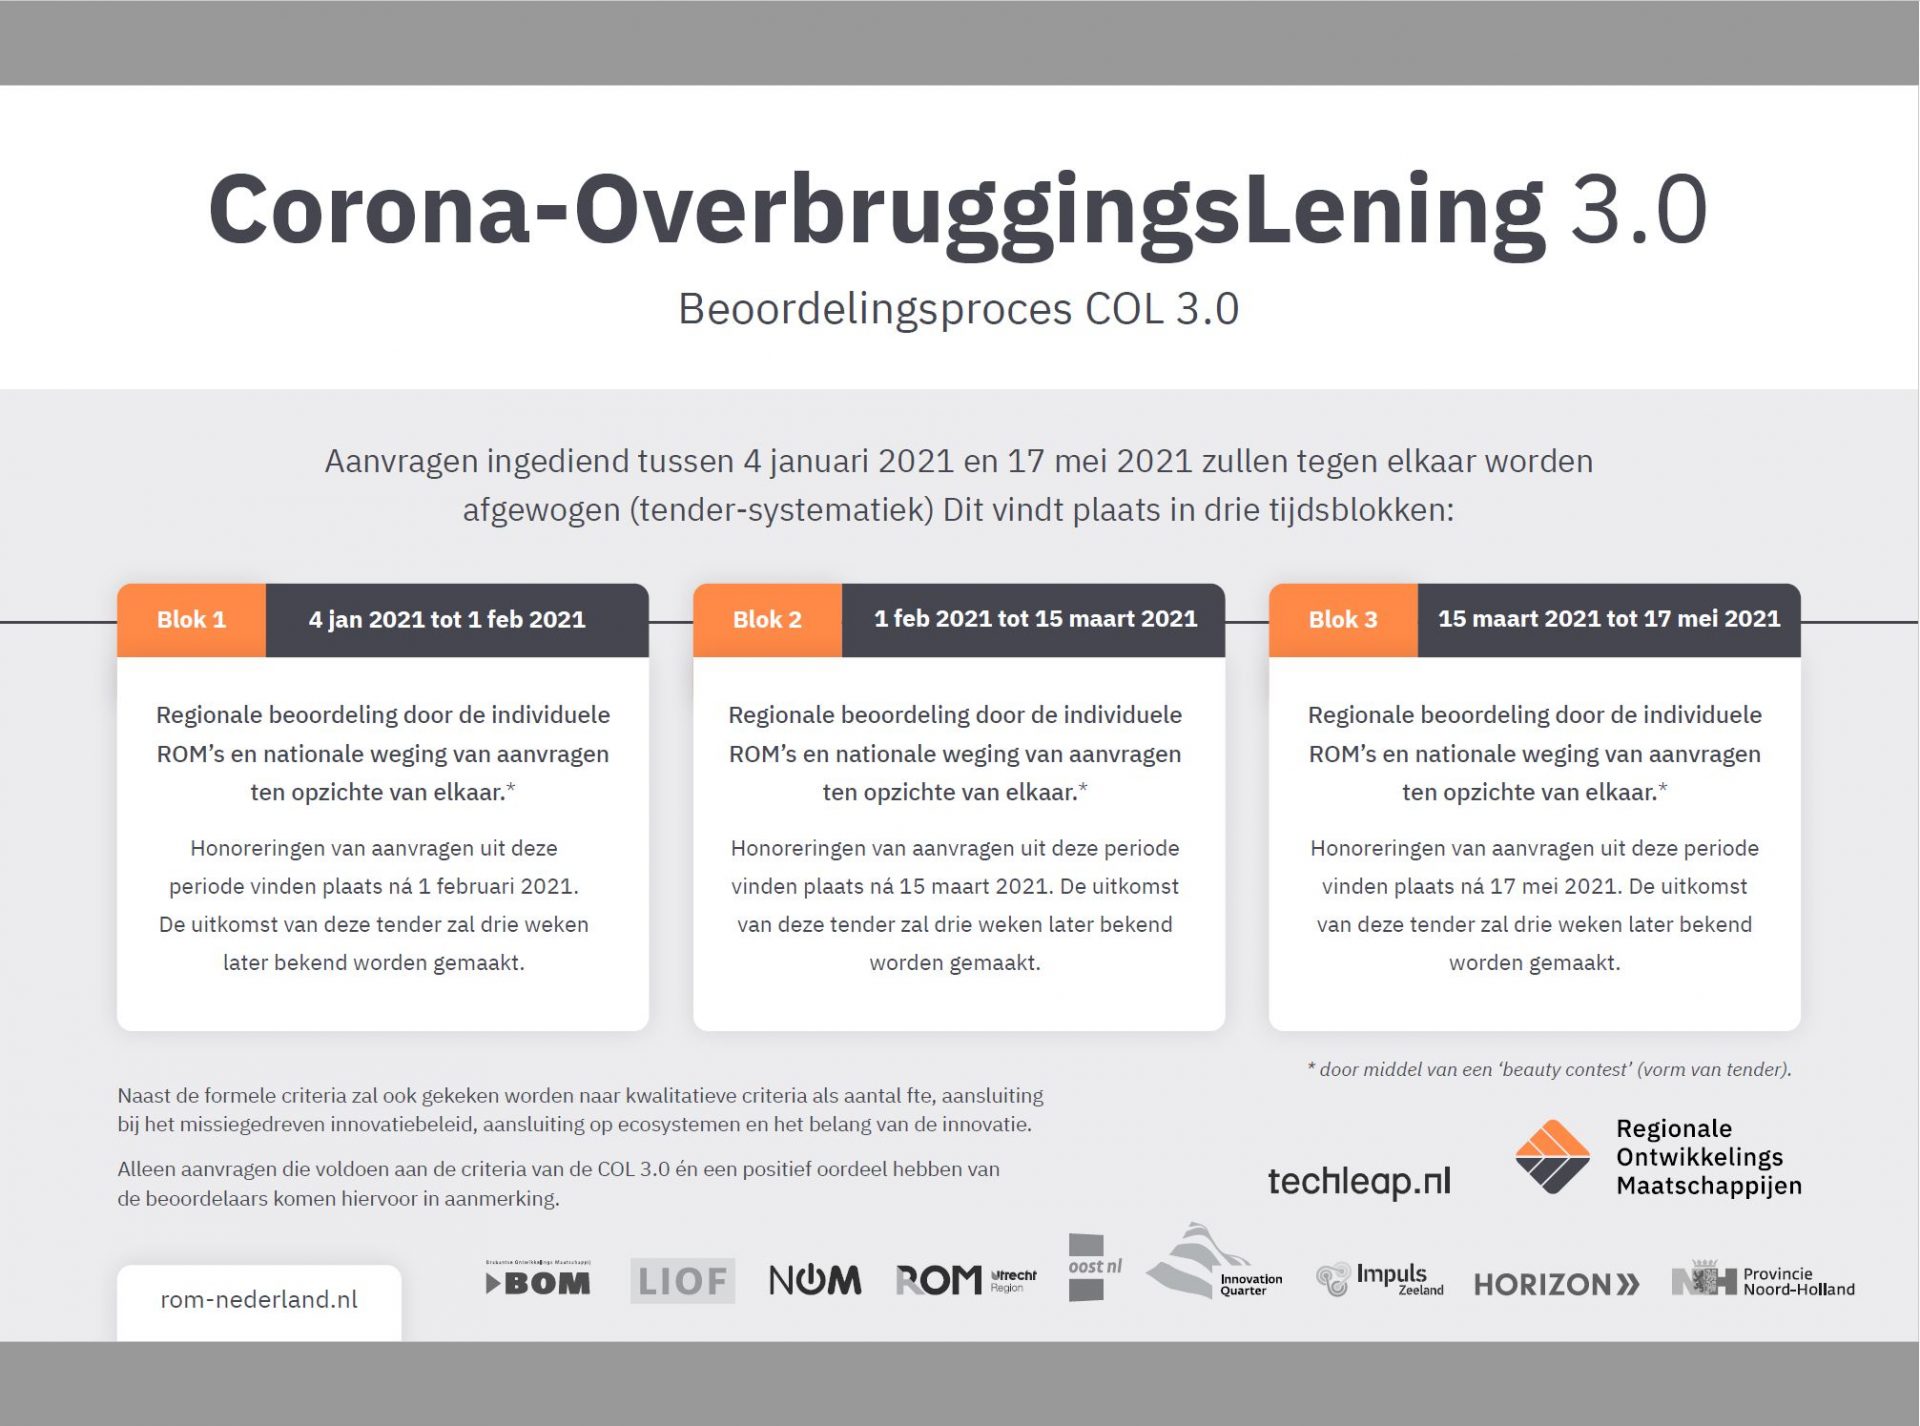 Corona-Override Loan application portal open from Jan. 4 